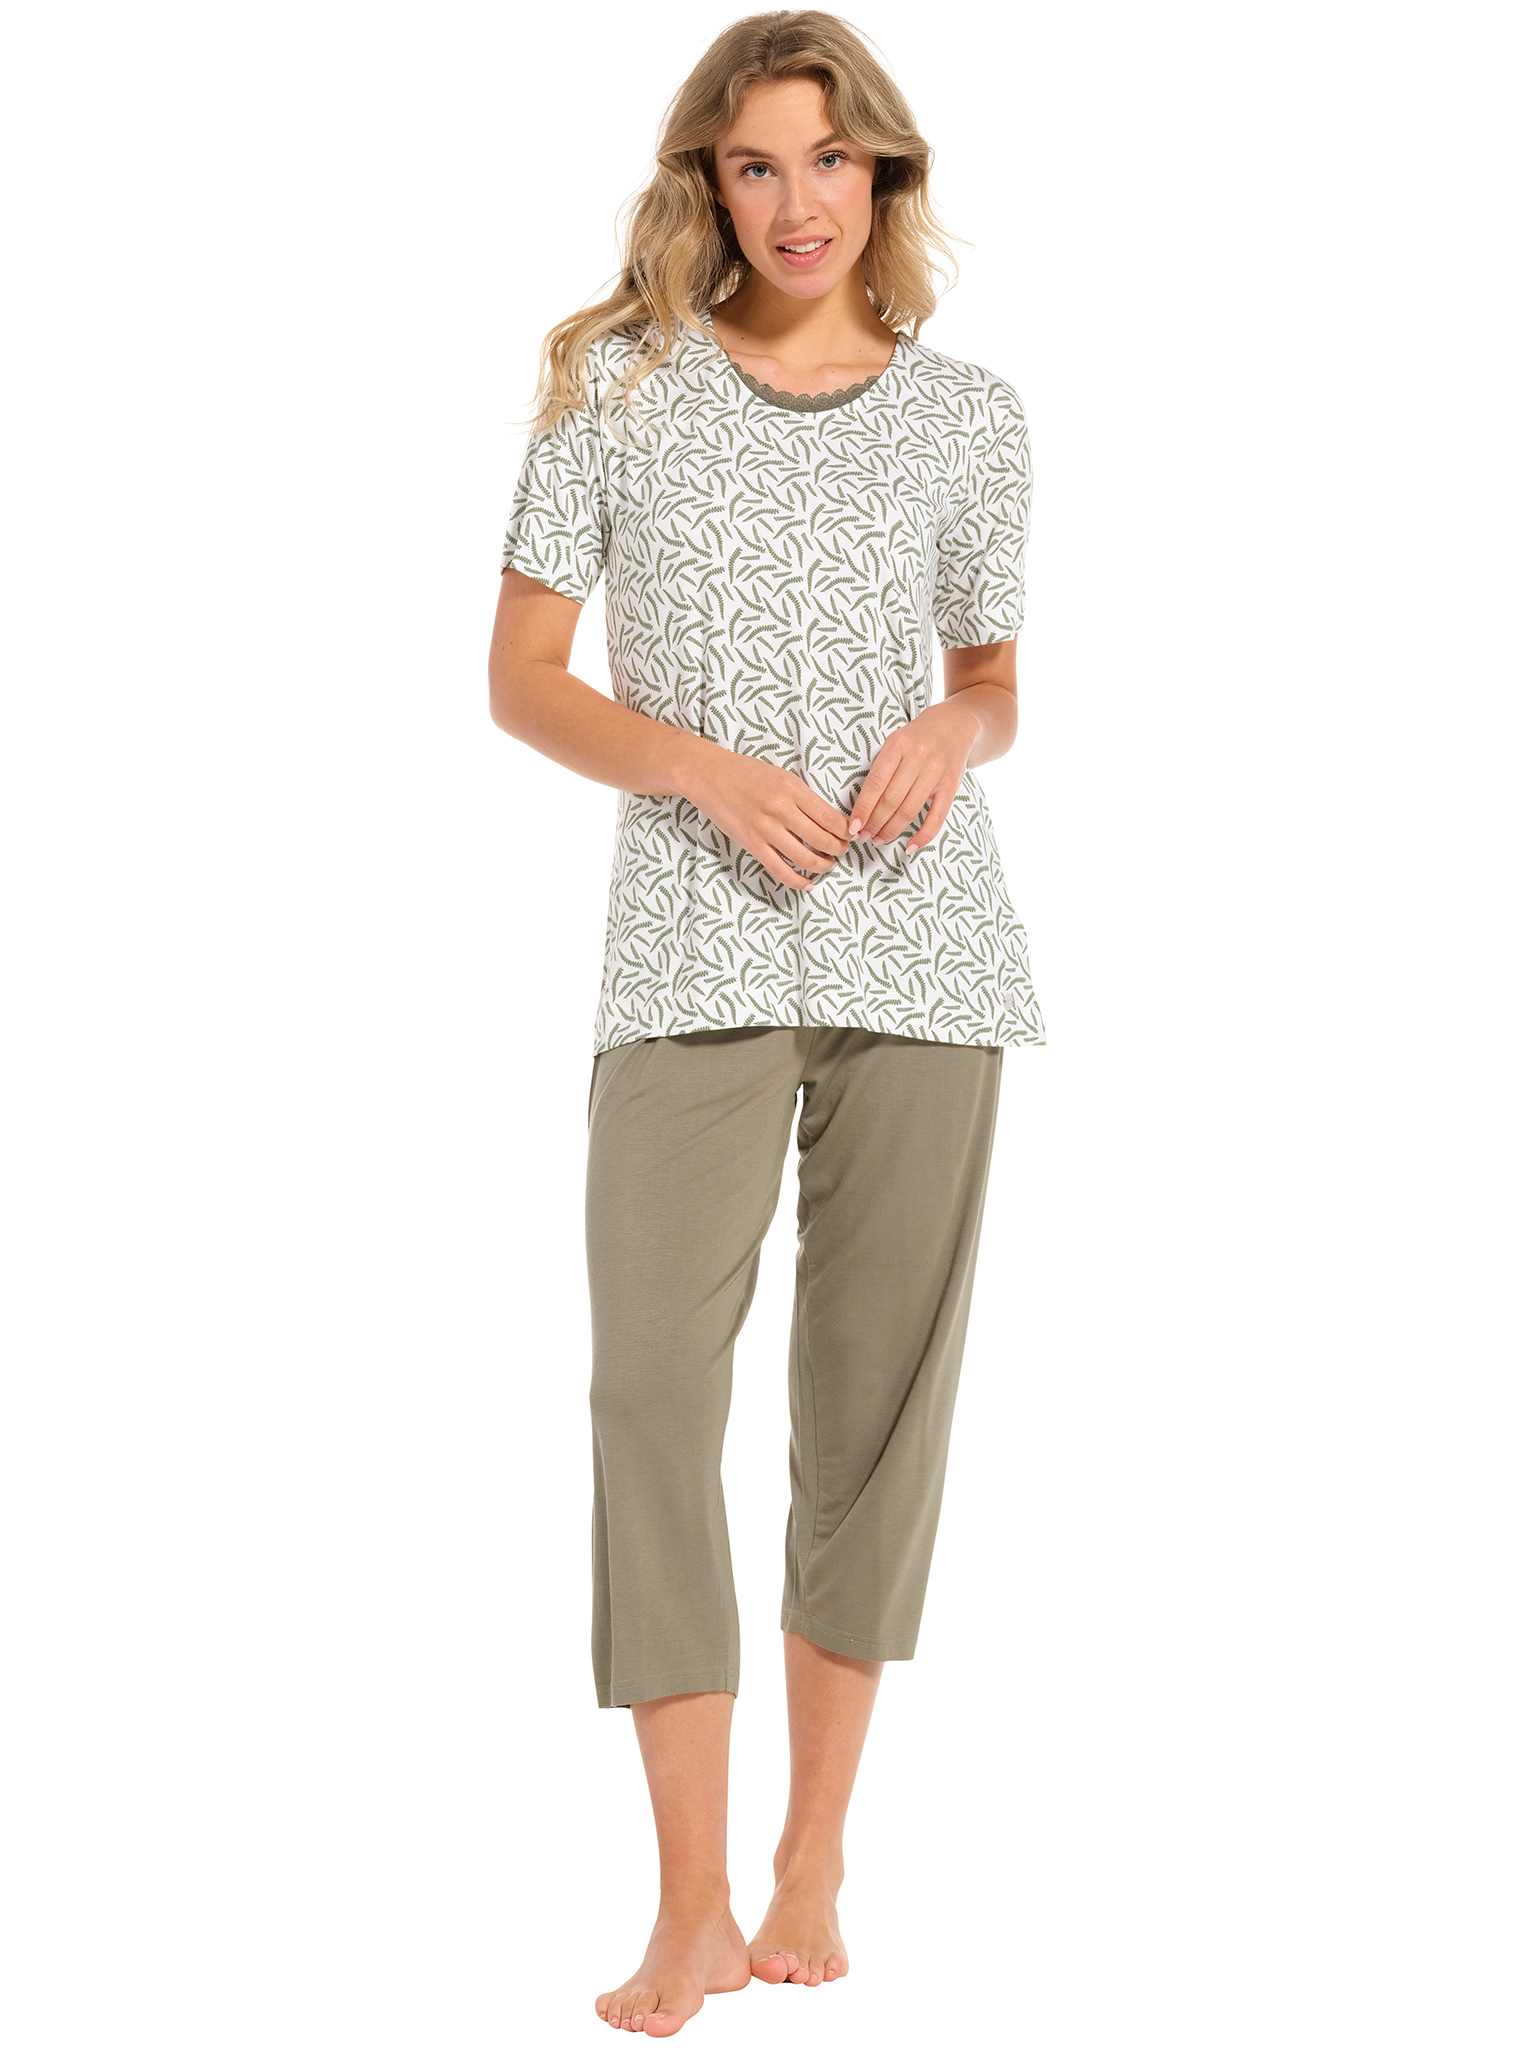 Pastunette pyjama dames - wit/donkergroen met print - 20241-148-2/720 - maat 40